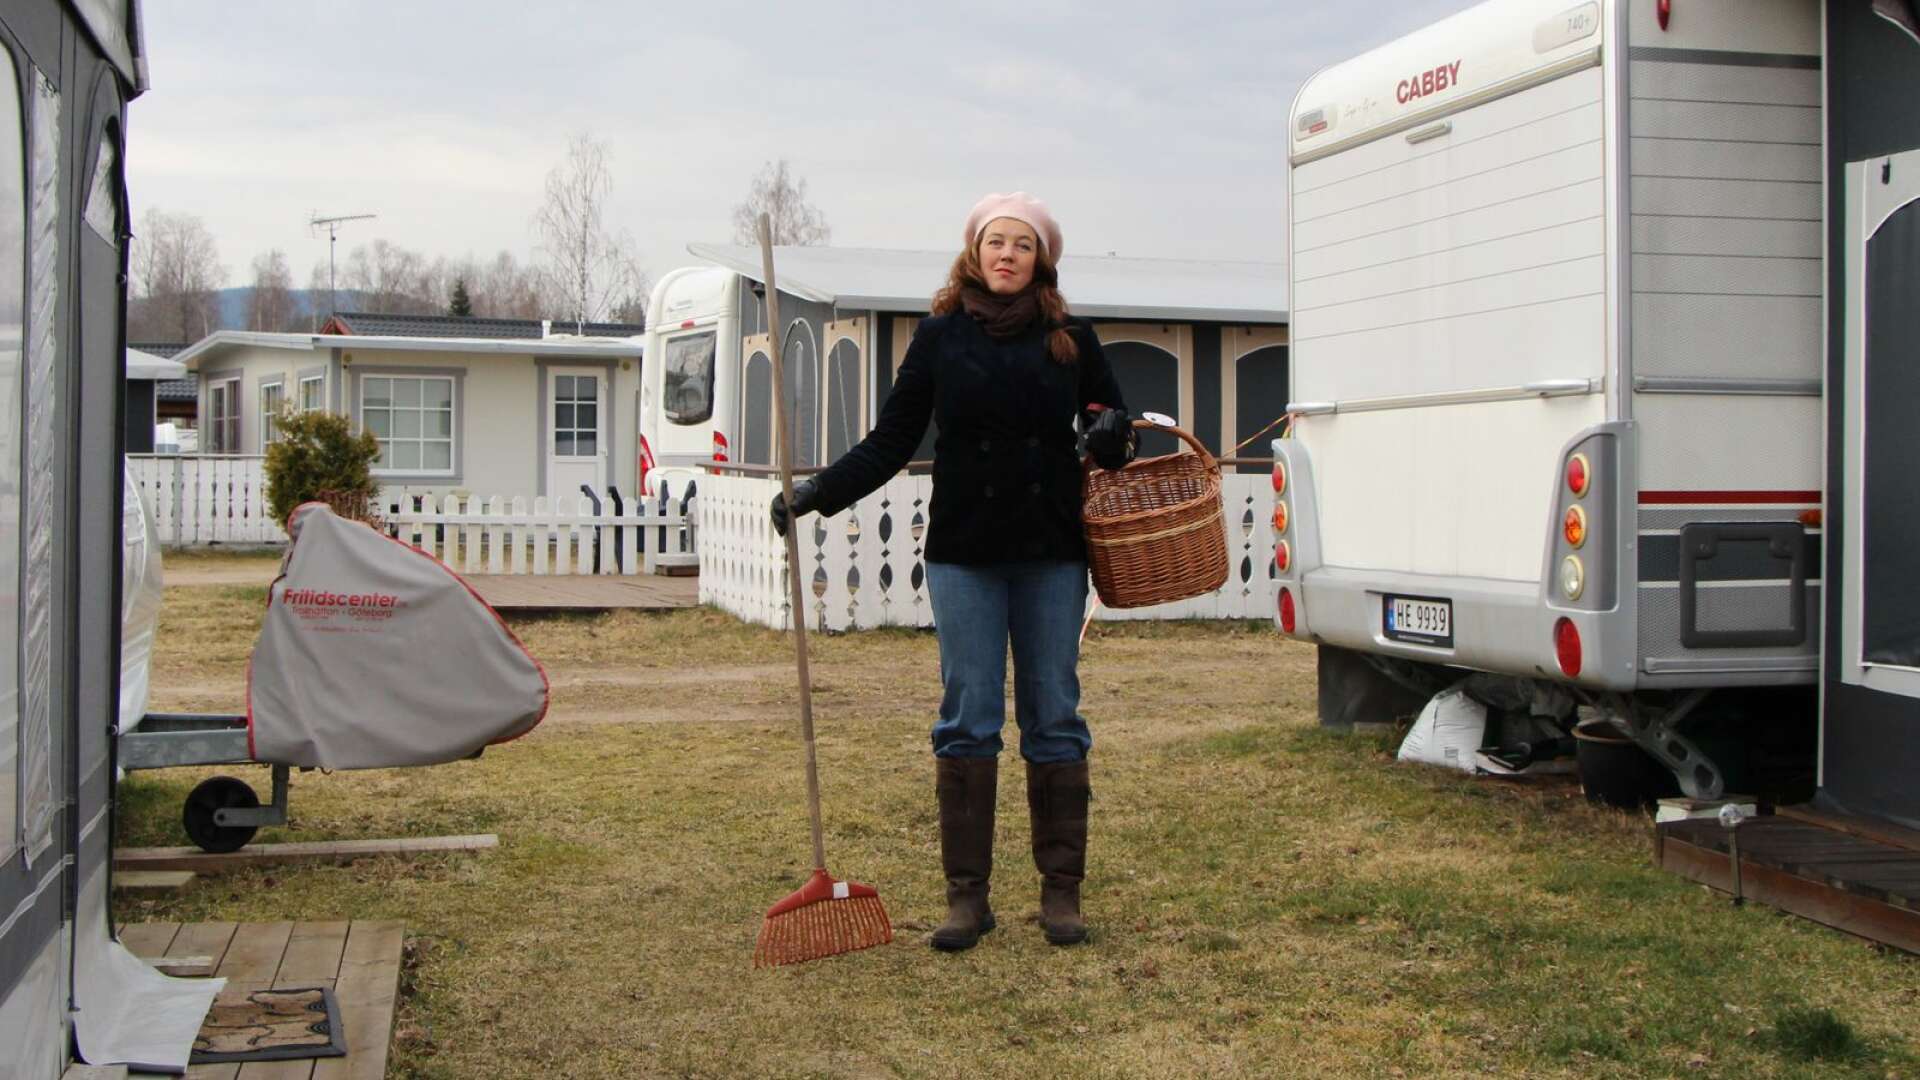 Torsby camping står utan norska gäster i påsk. Reseförbudet gäller över påskhelgen, vilket oroar Helena Henriksson, vd.